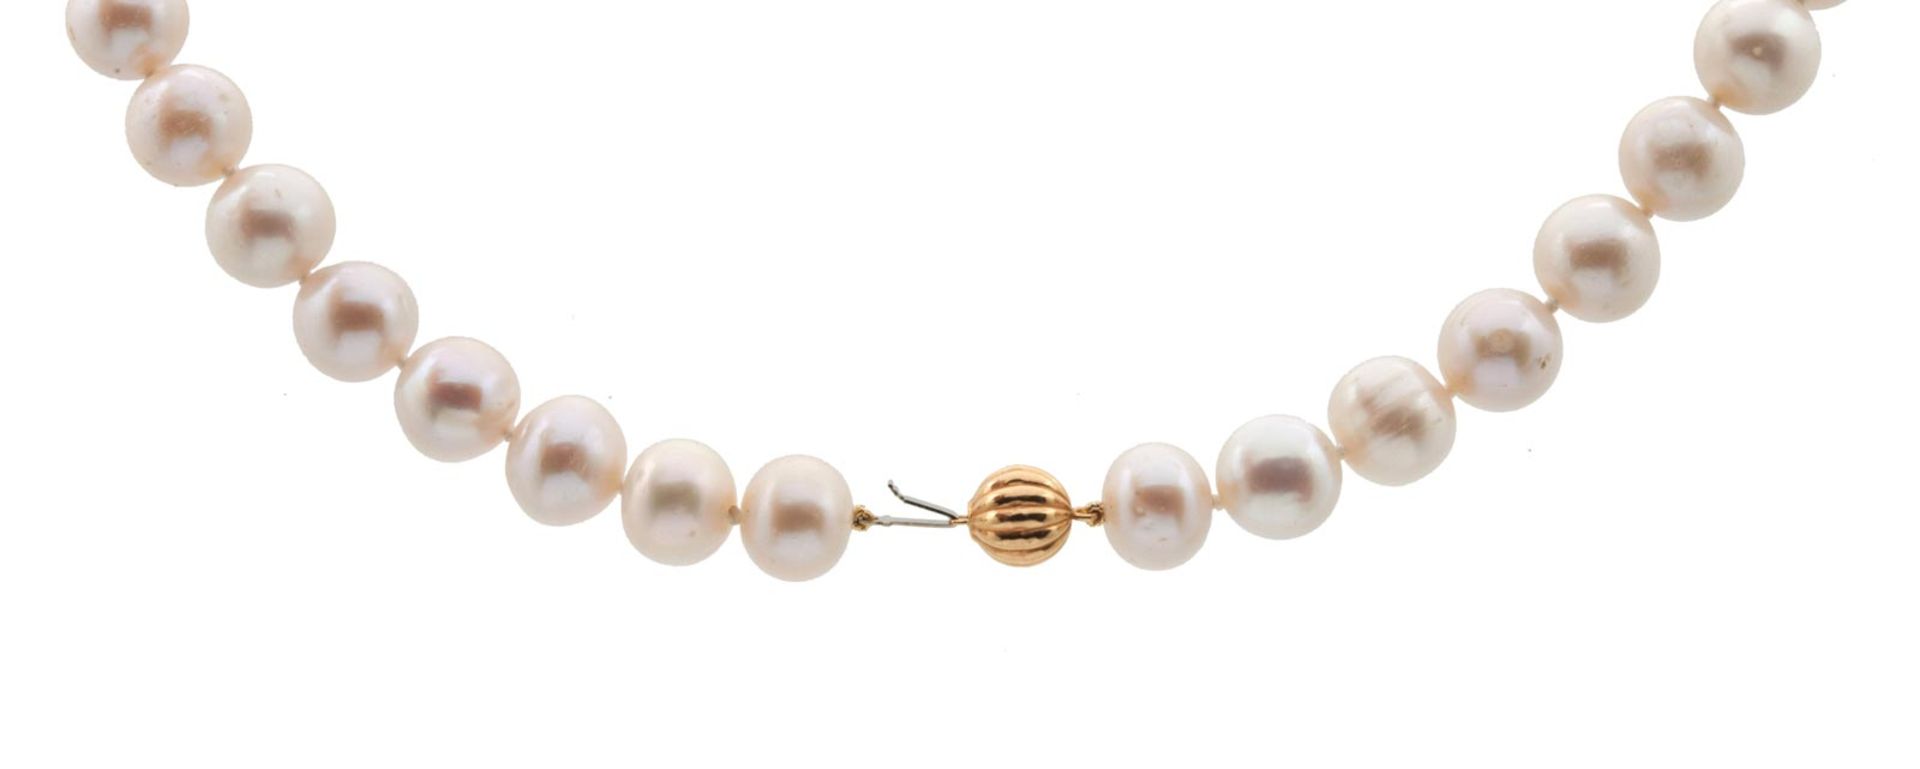 NECKLACE de perlas cultivadas de agua dulce de 13-15 mm. Cierre de bola en oro gallonado de 18 kl. 1